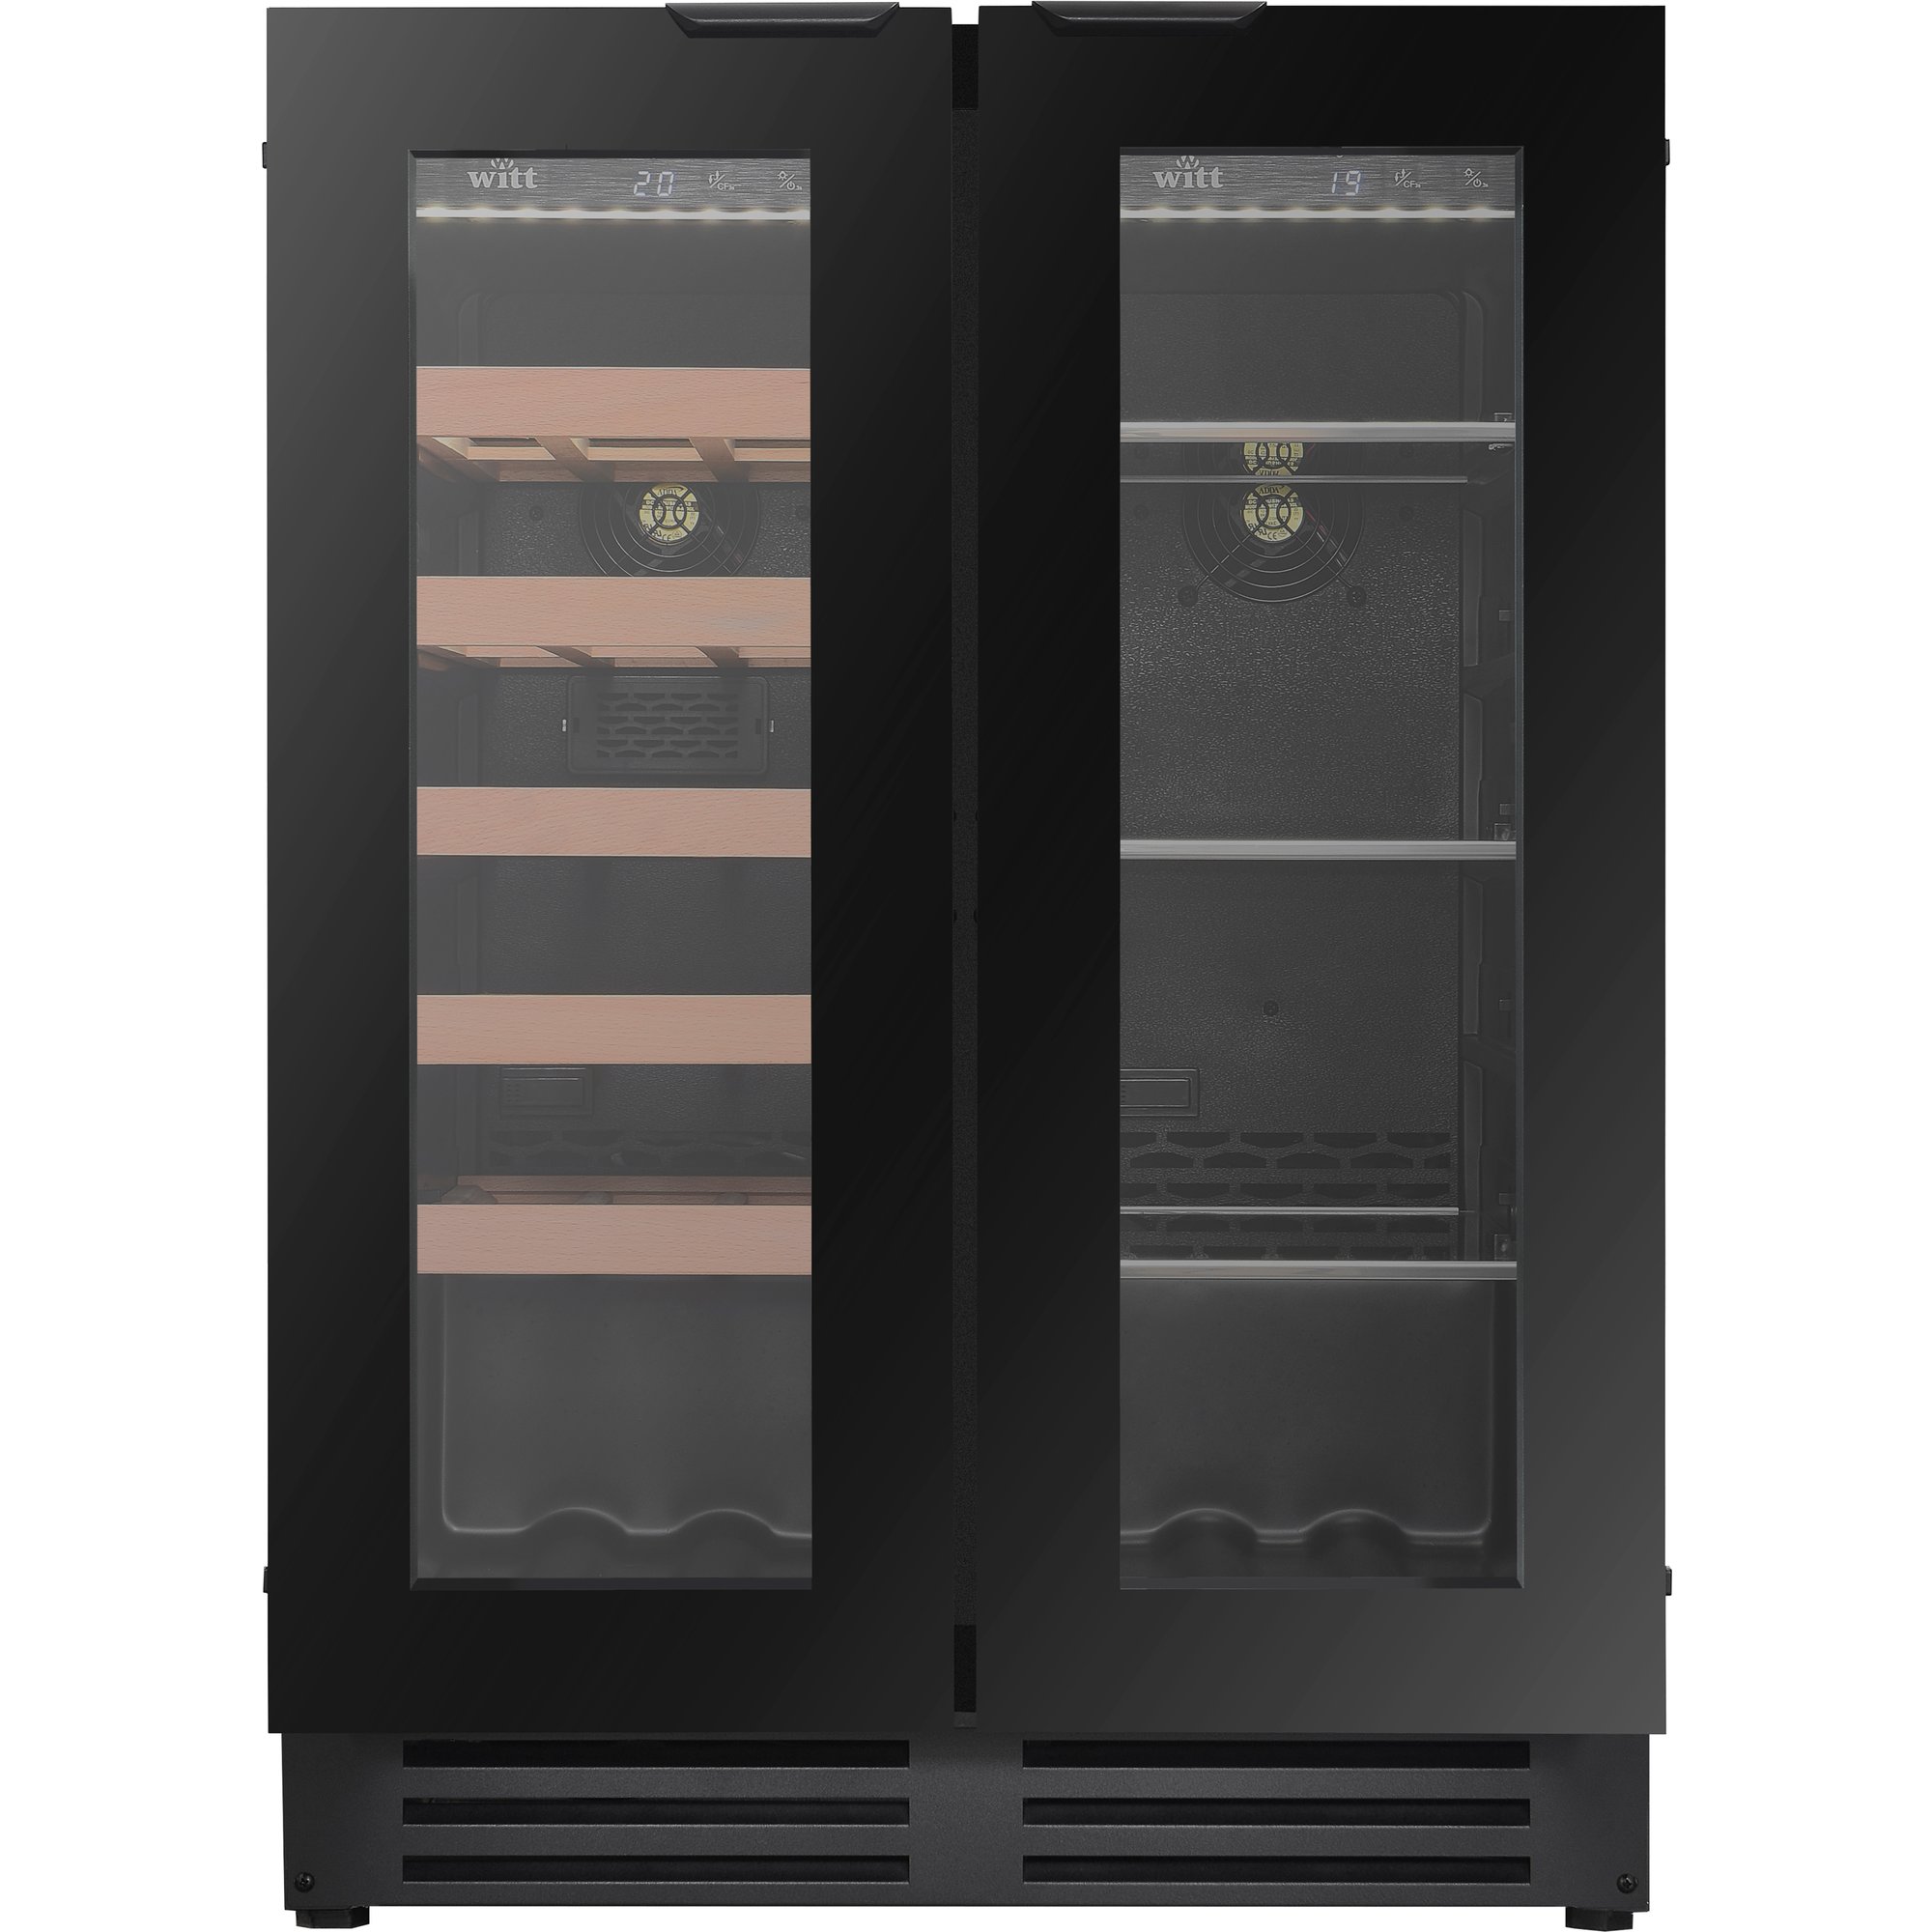 #1 på vores liste over vinkøleskabe er Vinkøleskab